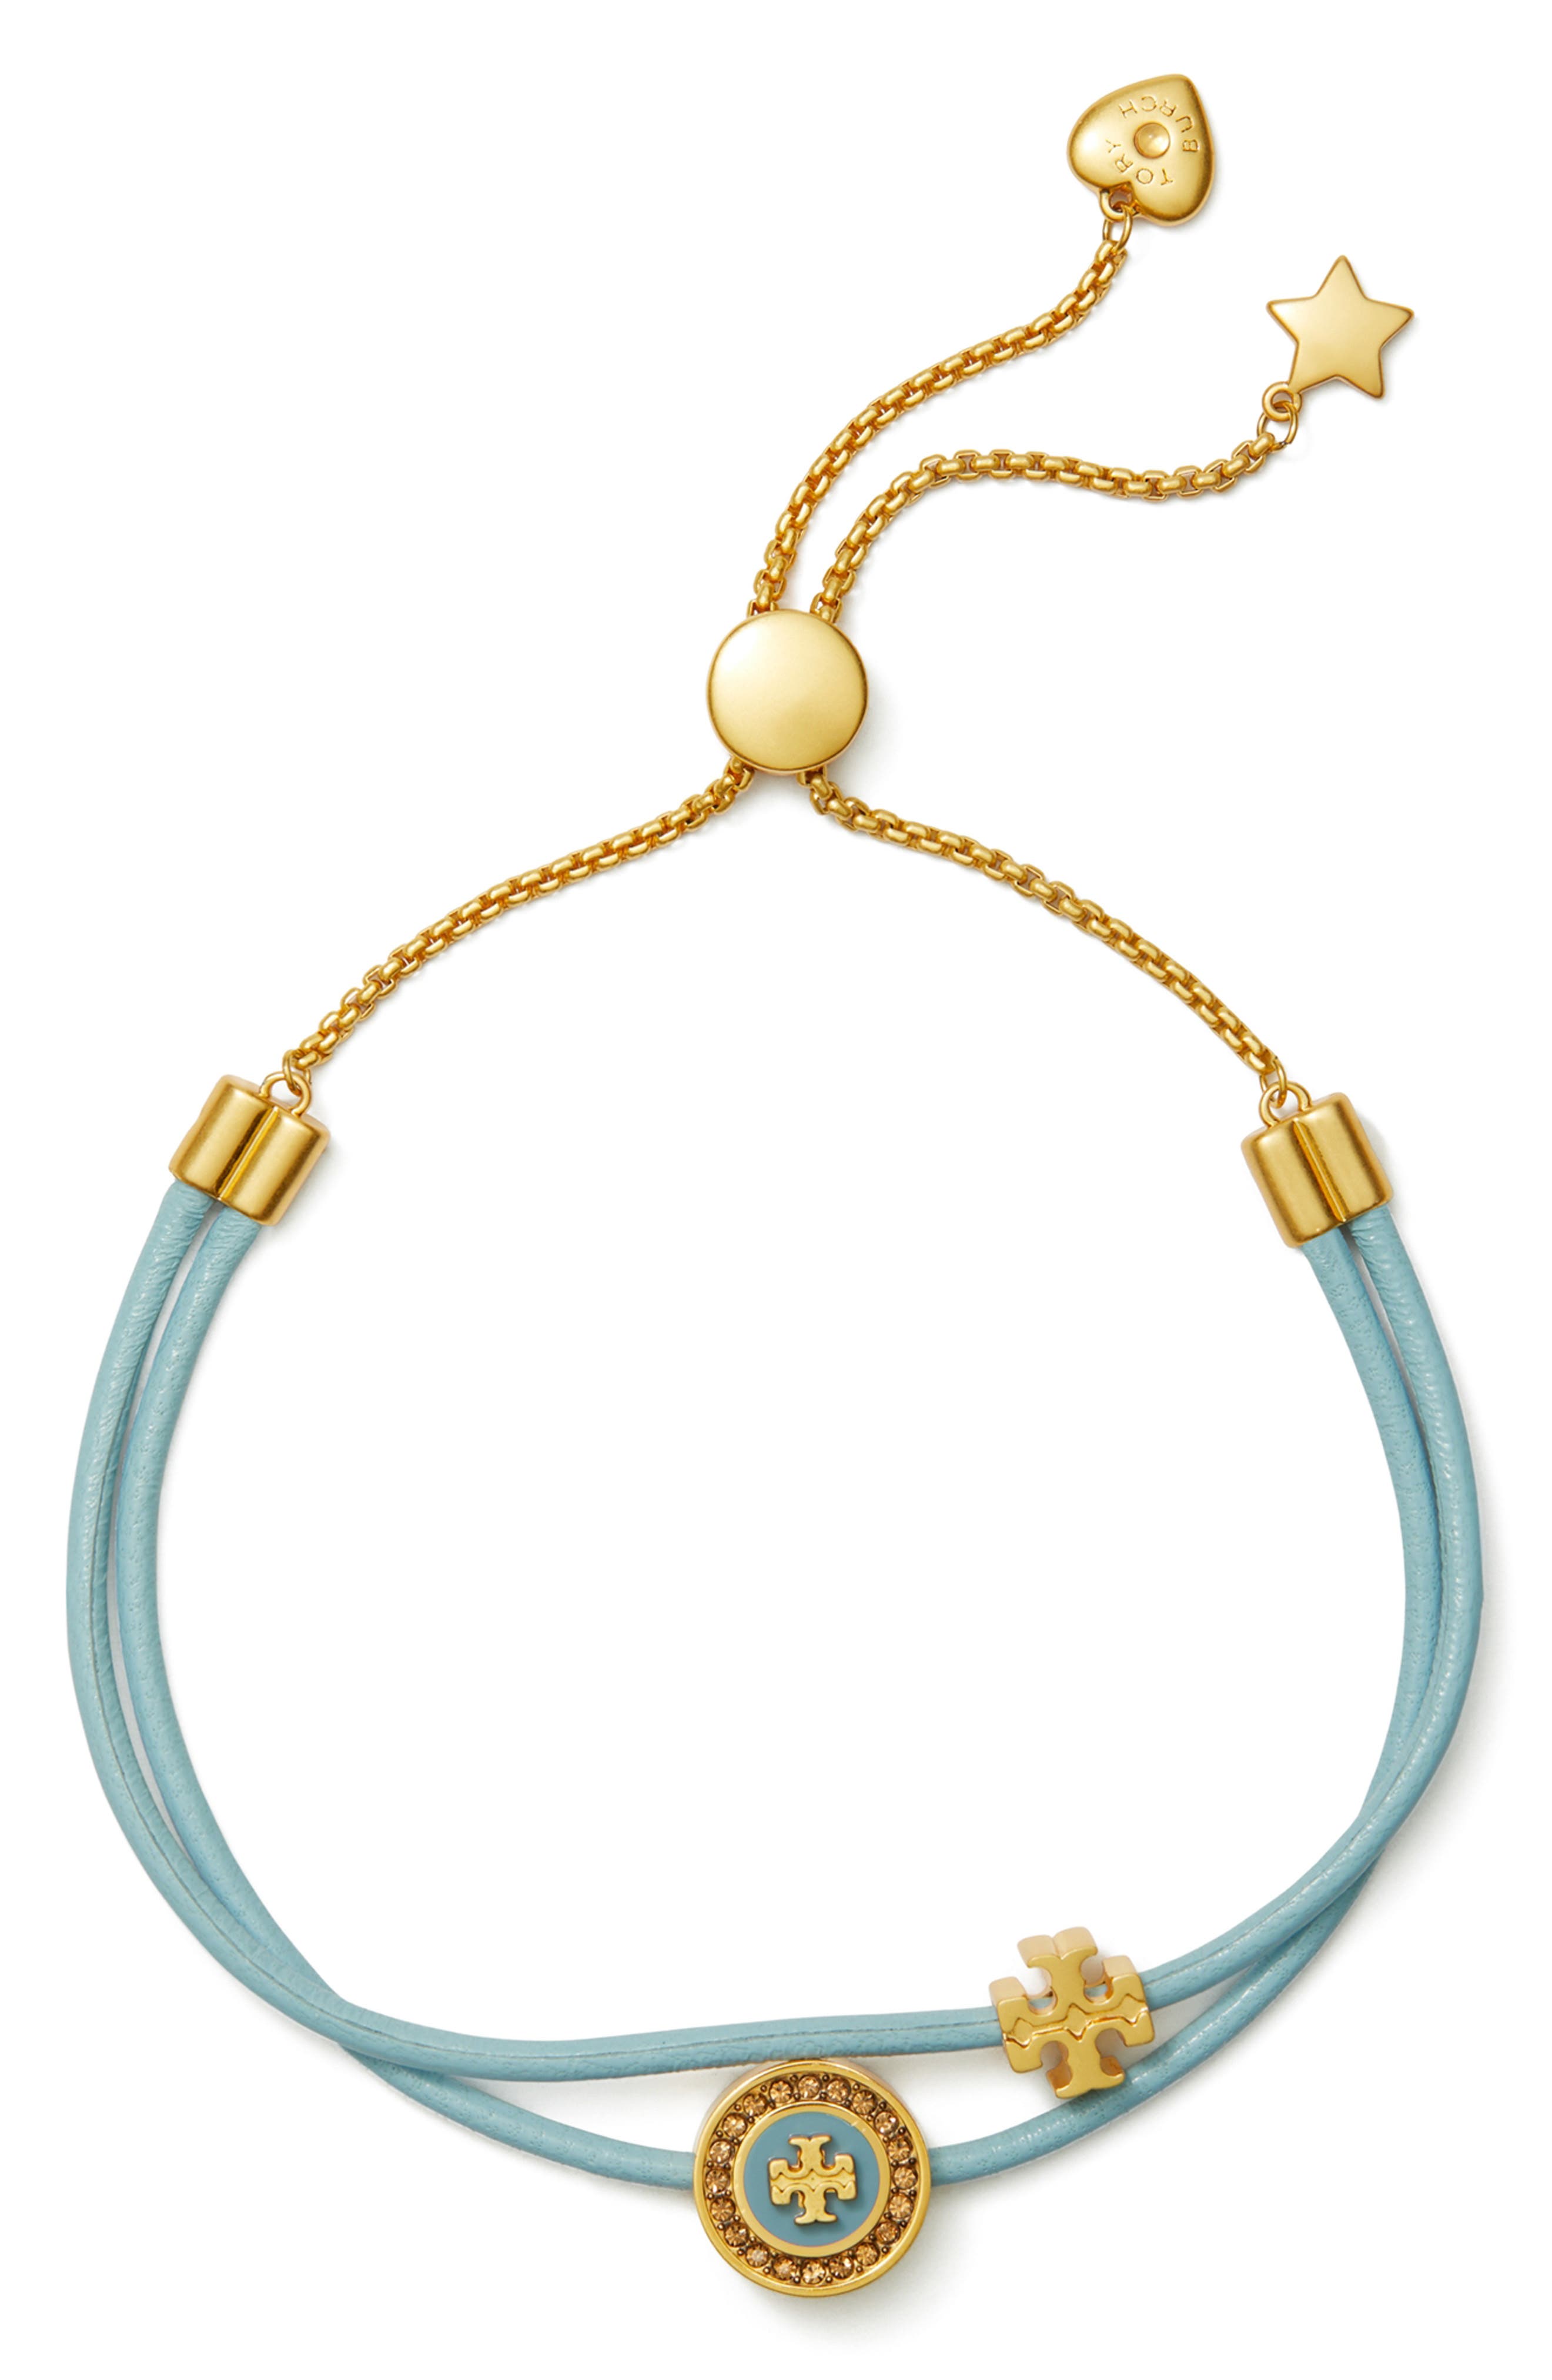 discount 79% Golden Single NoName bracelet WOMEN FASHION Accessories Bracelet 